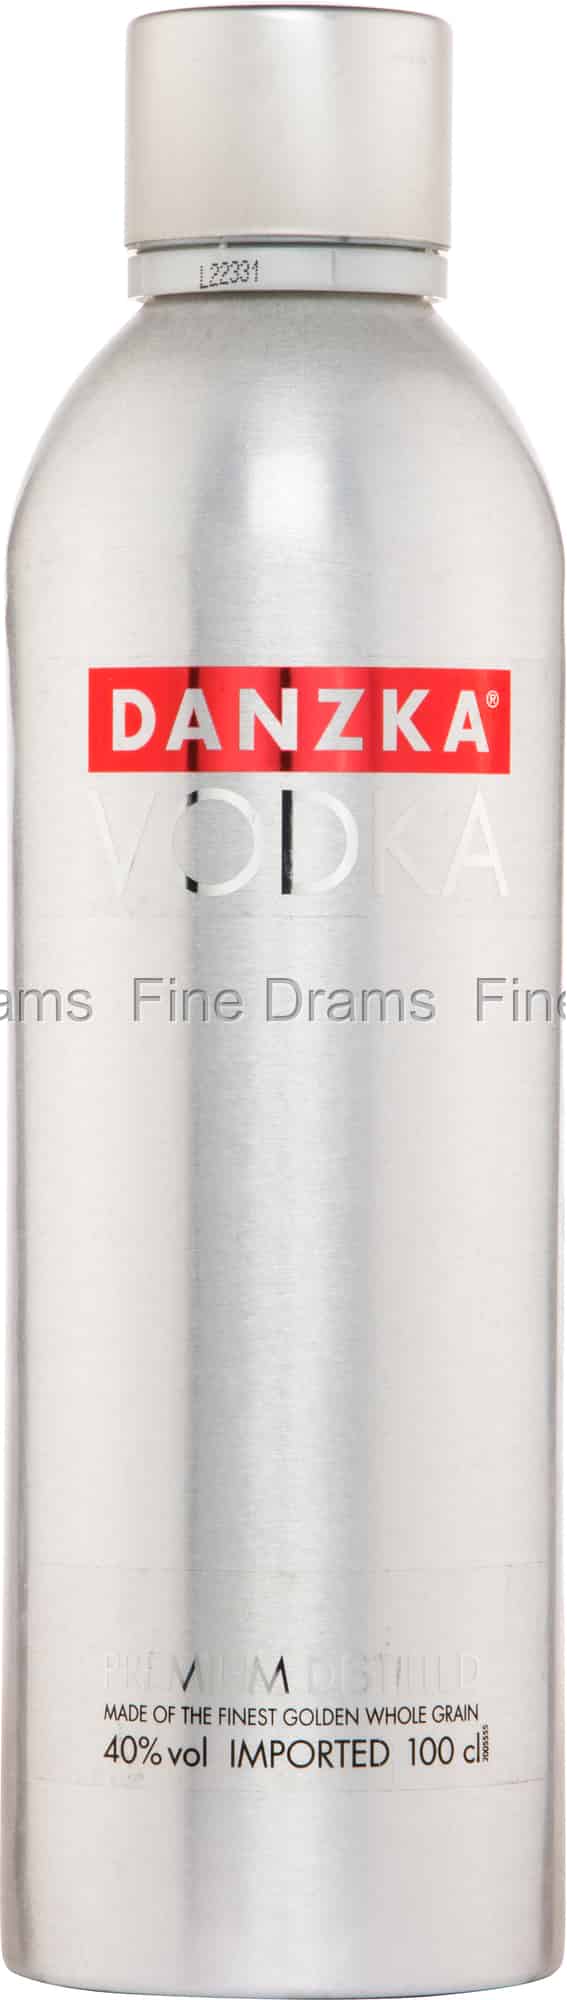 Liter) Vodka Danzka (1